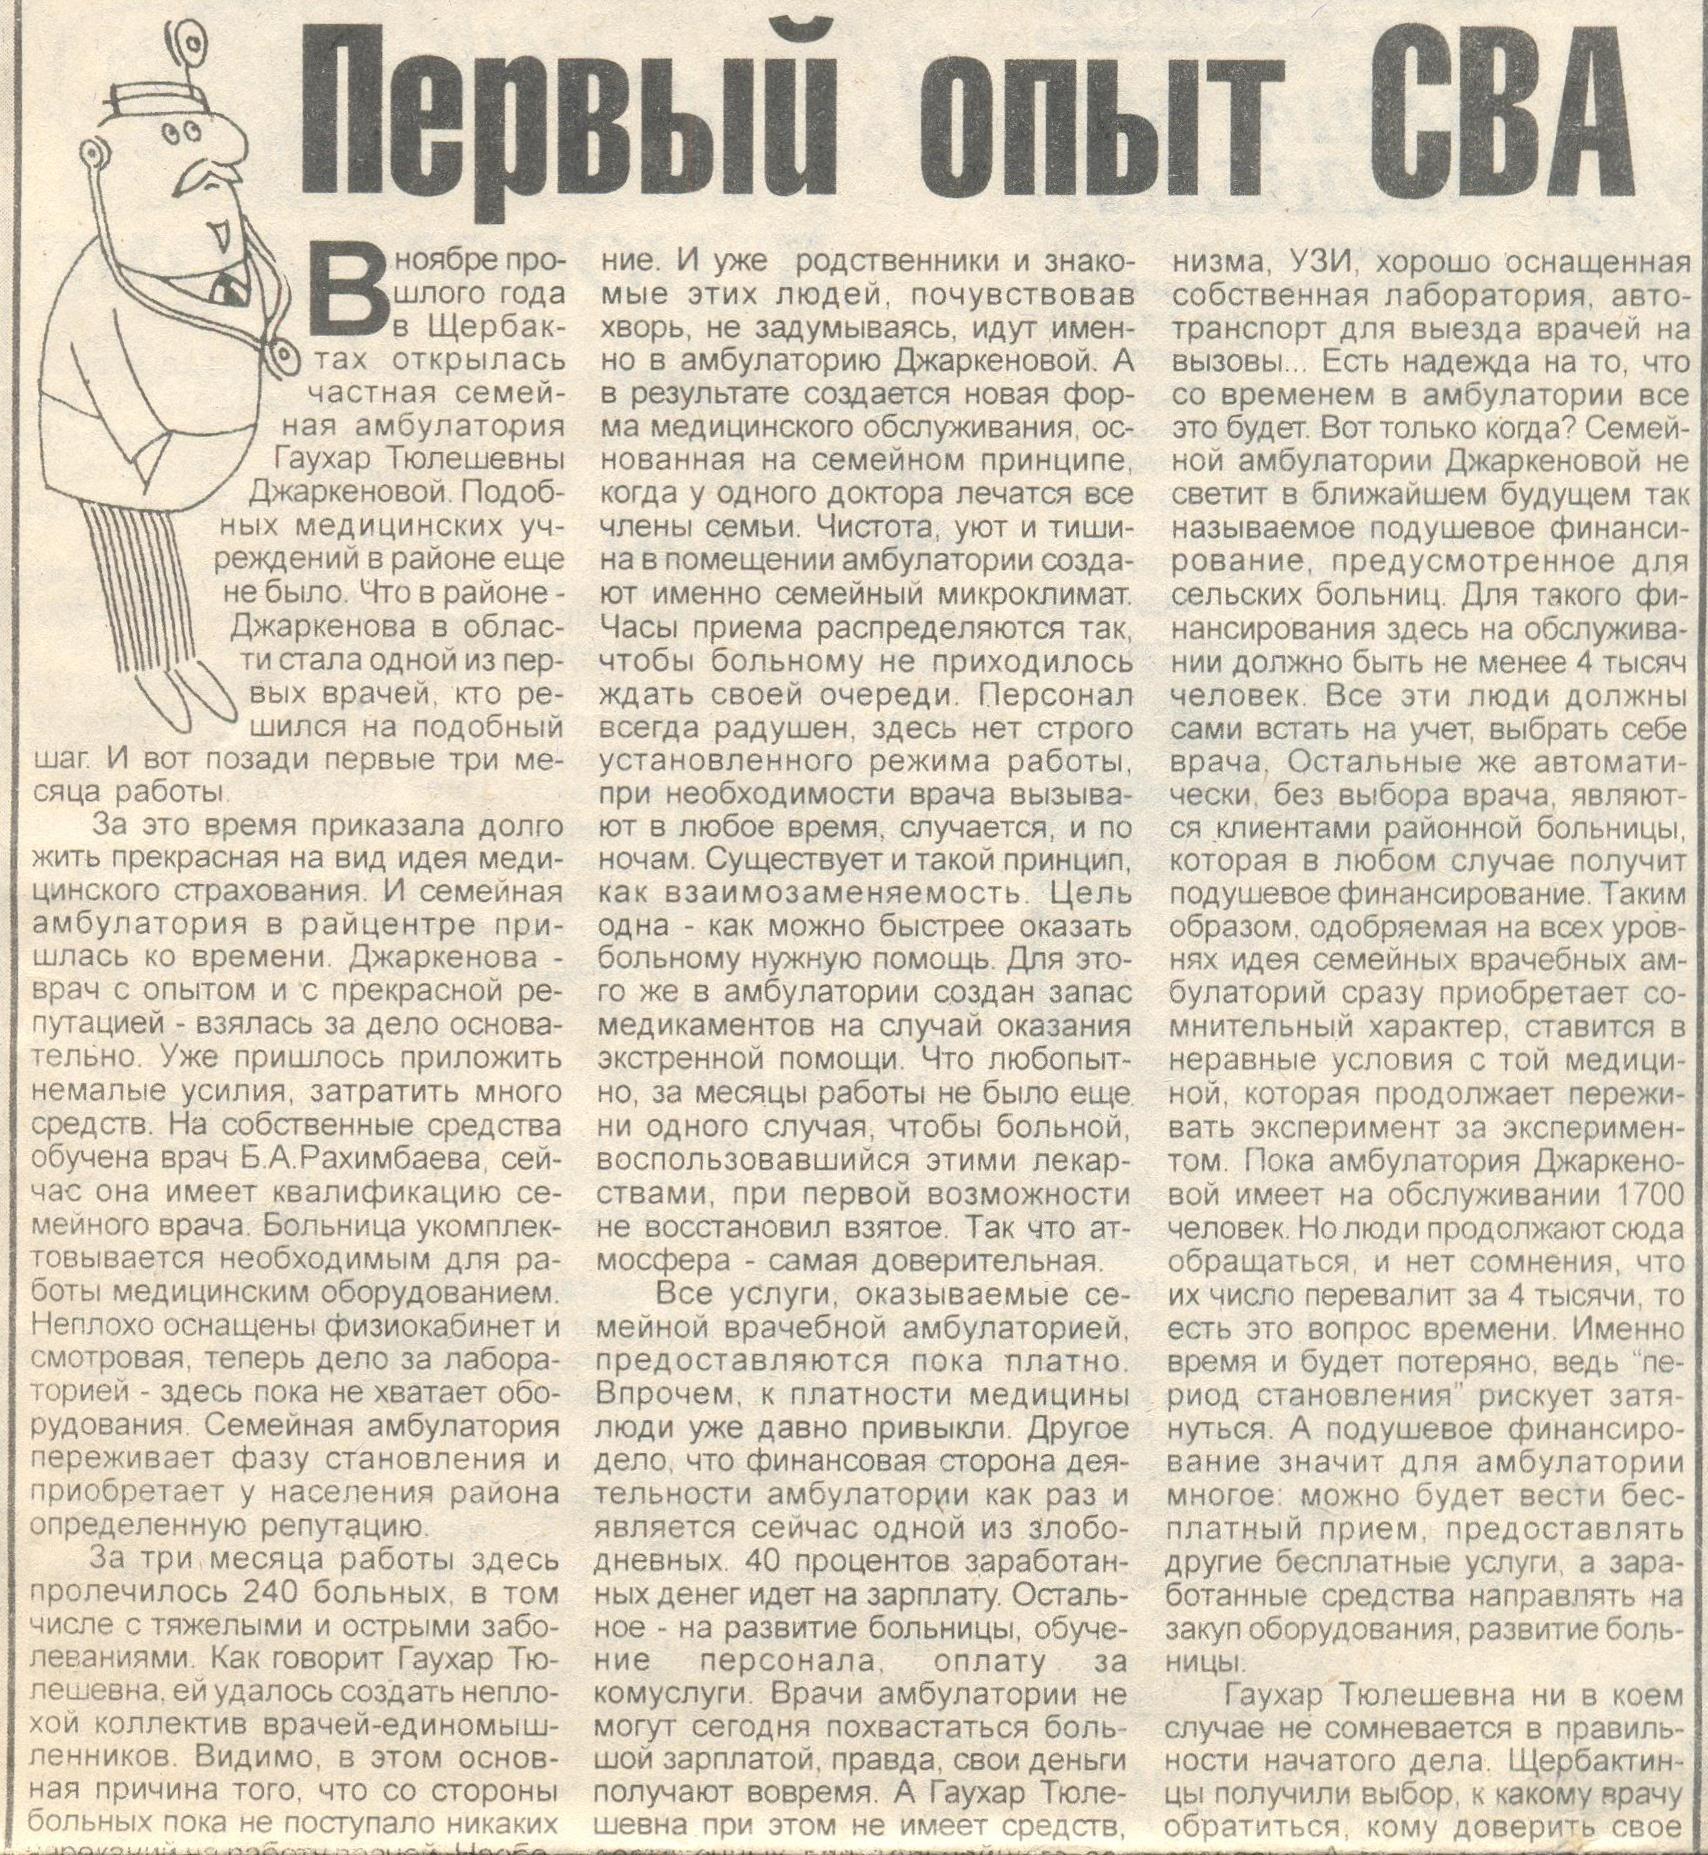 Первый опыт СВА. - Звезда Прииртышья. - 1999. - 25 февраля. - С. 7